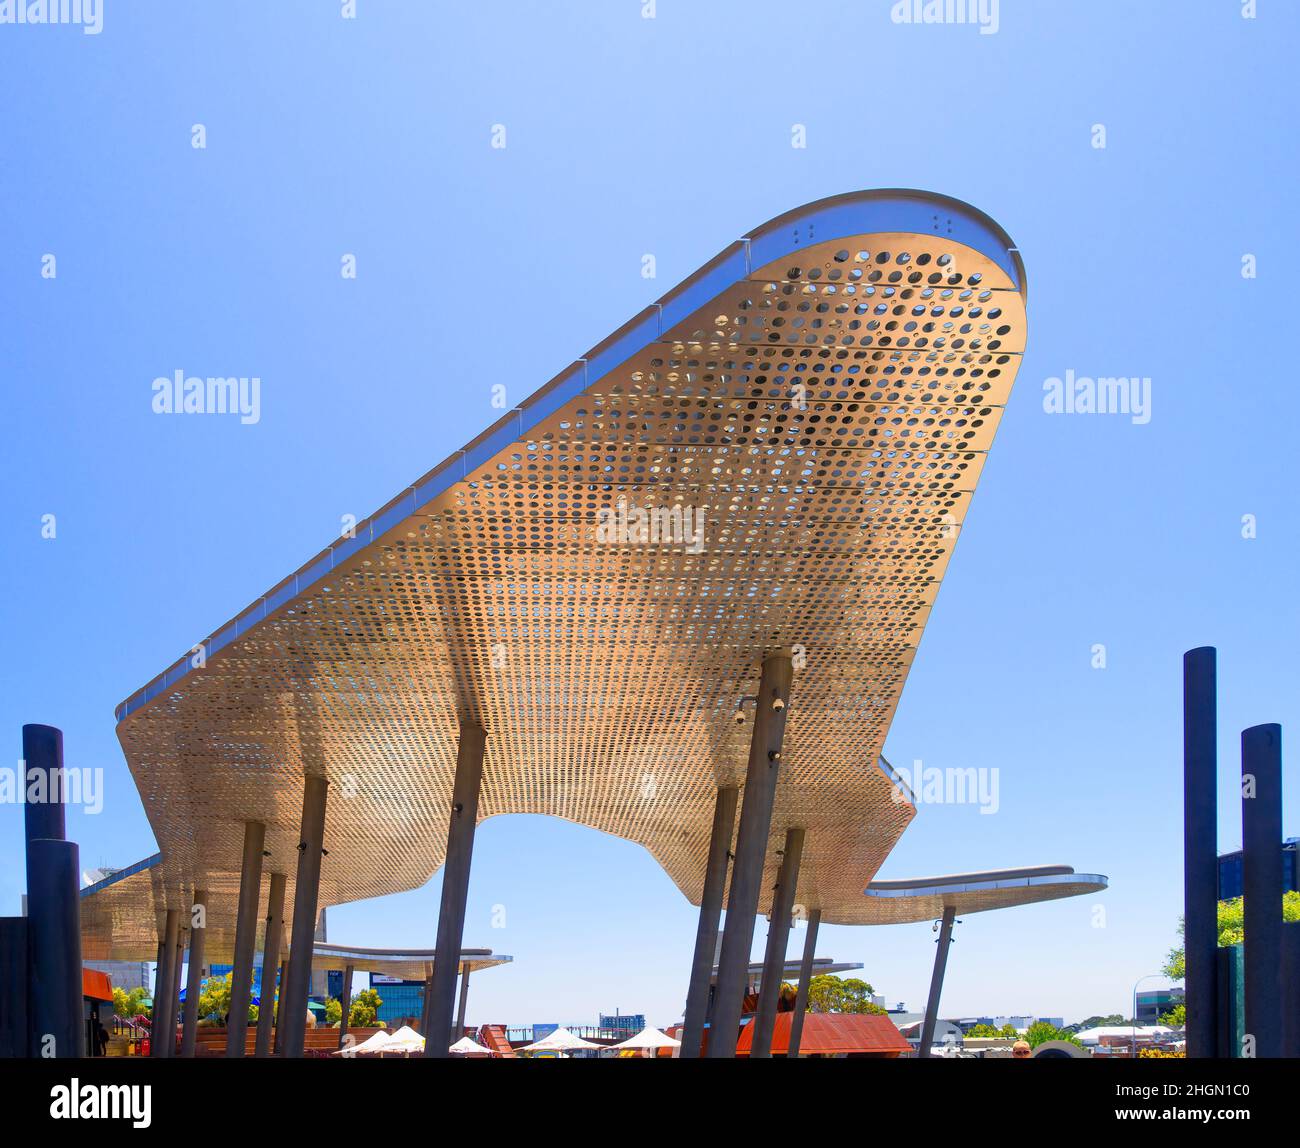 Perth, Australie - aménagement de la place Yagan en été par Lyons Architects / iredale pedersen Hook Architects / ASPECT Studios Banque D'Images